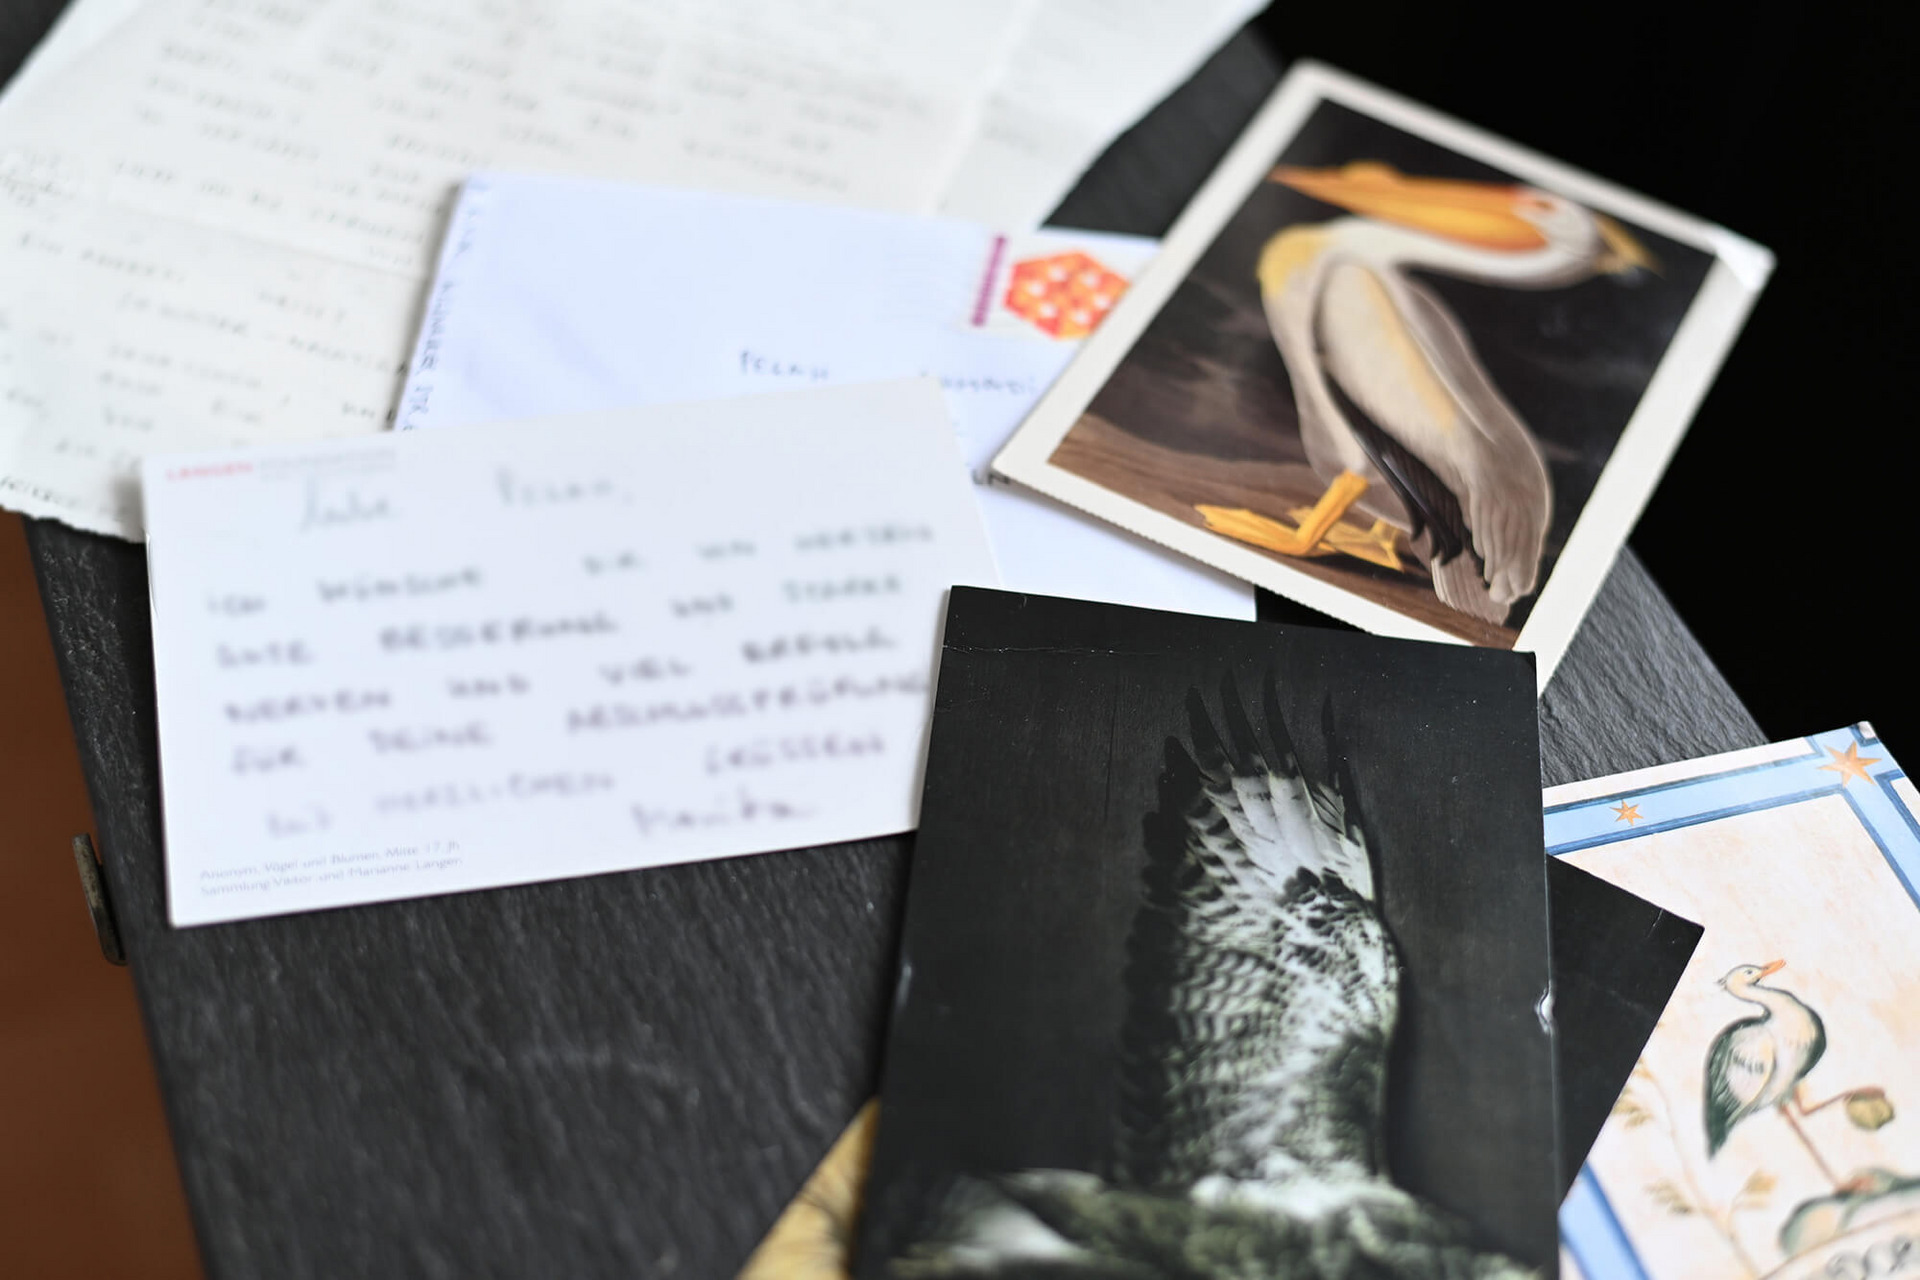 Postkarten und Briefe liegen auf einem Tisch